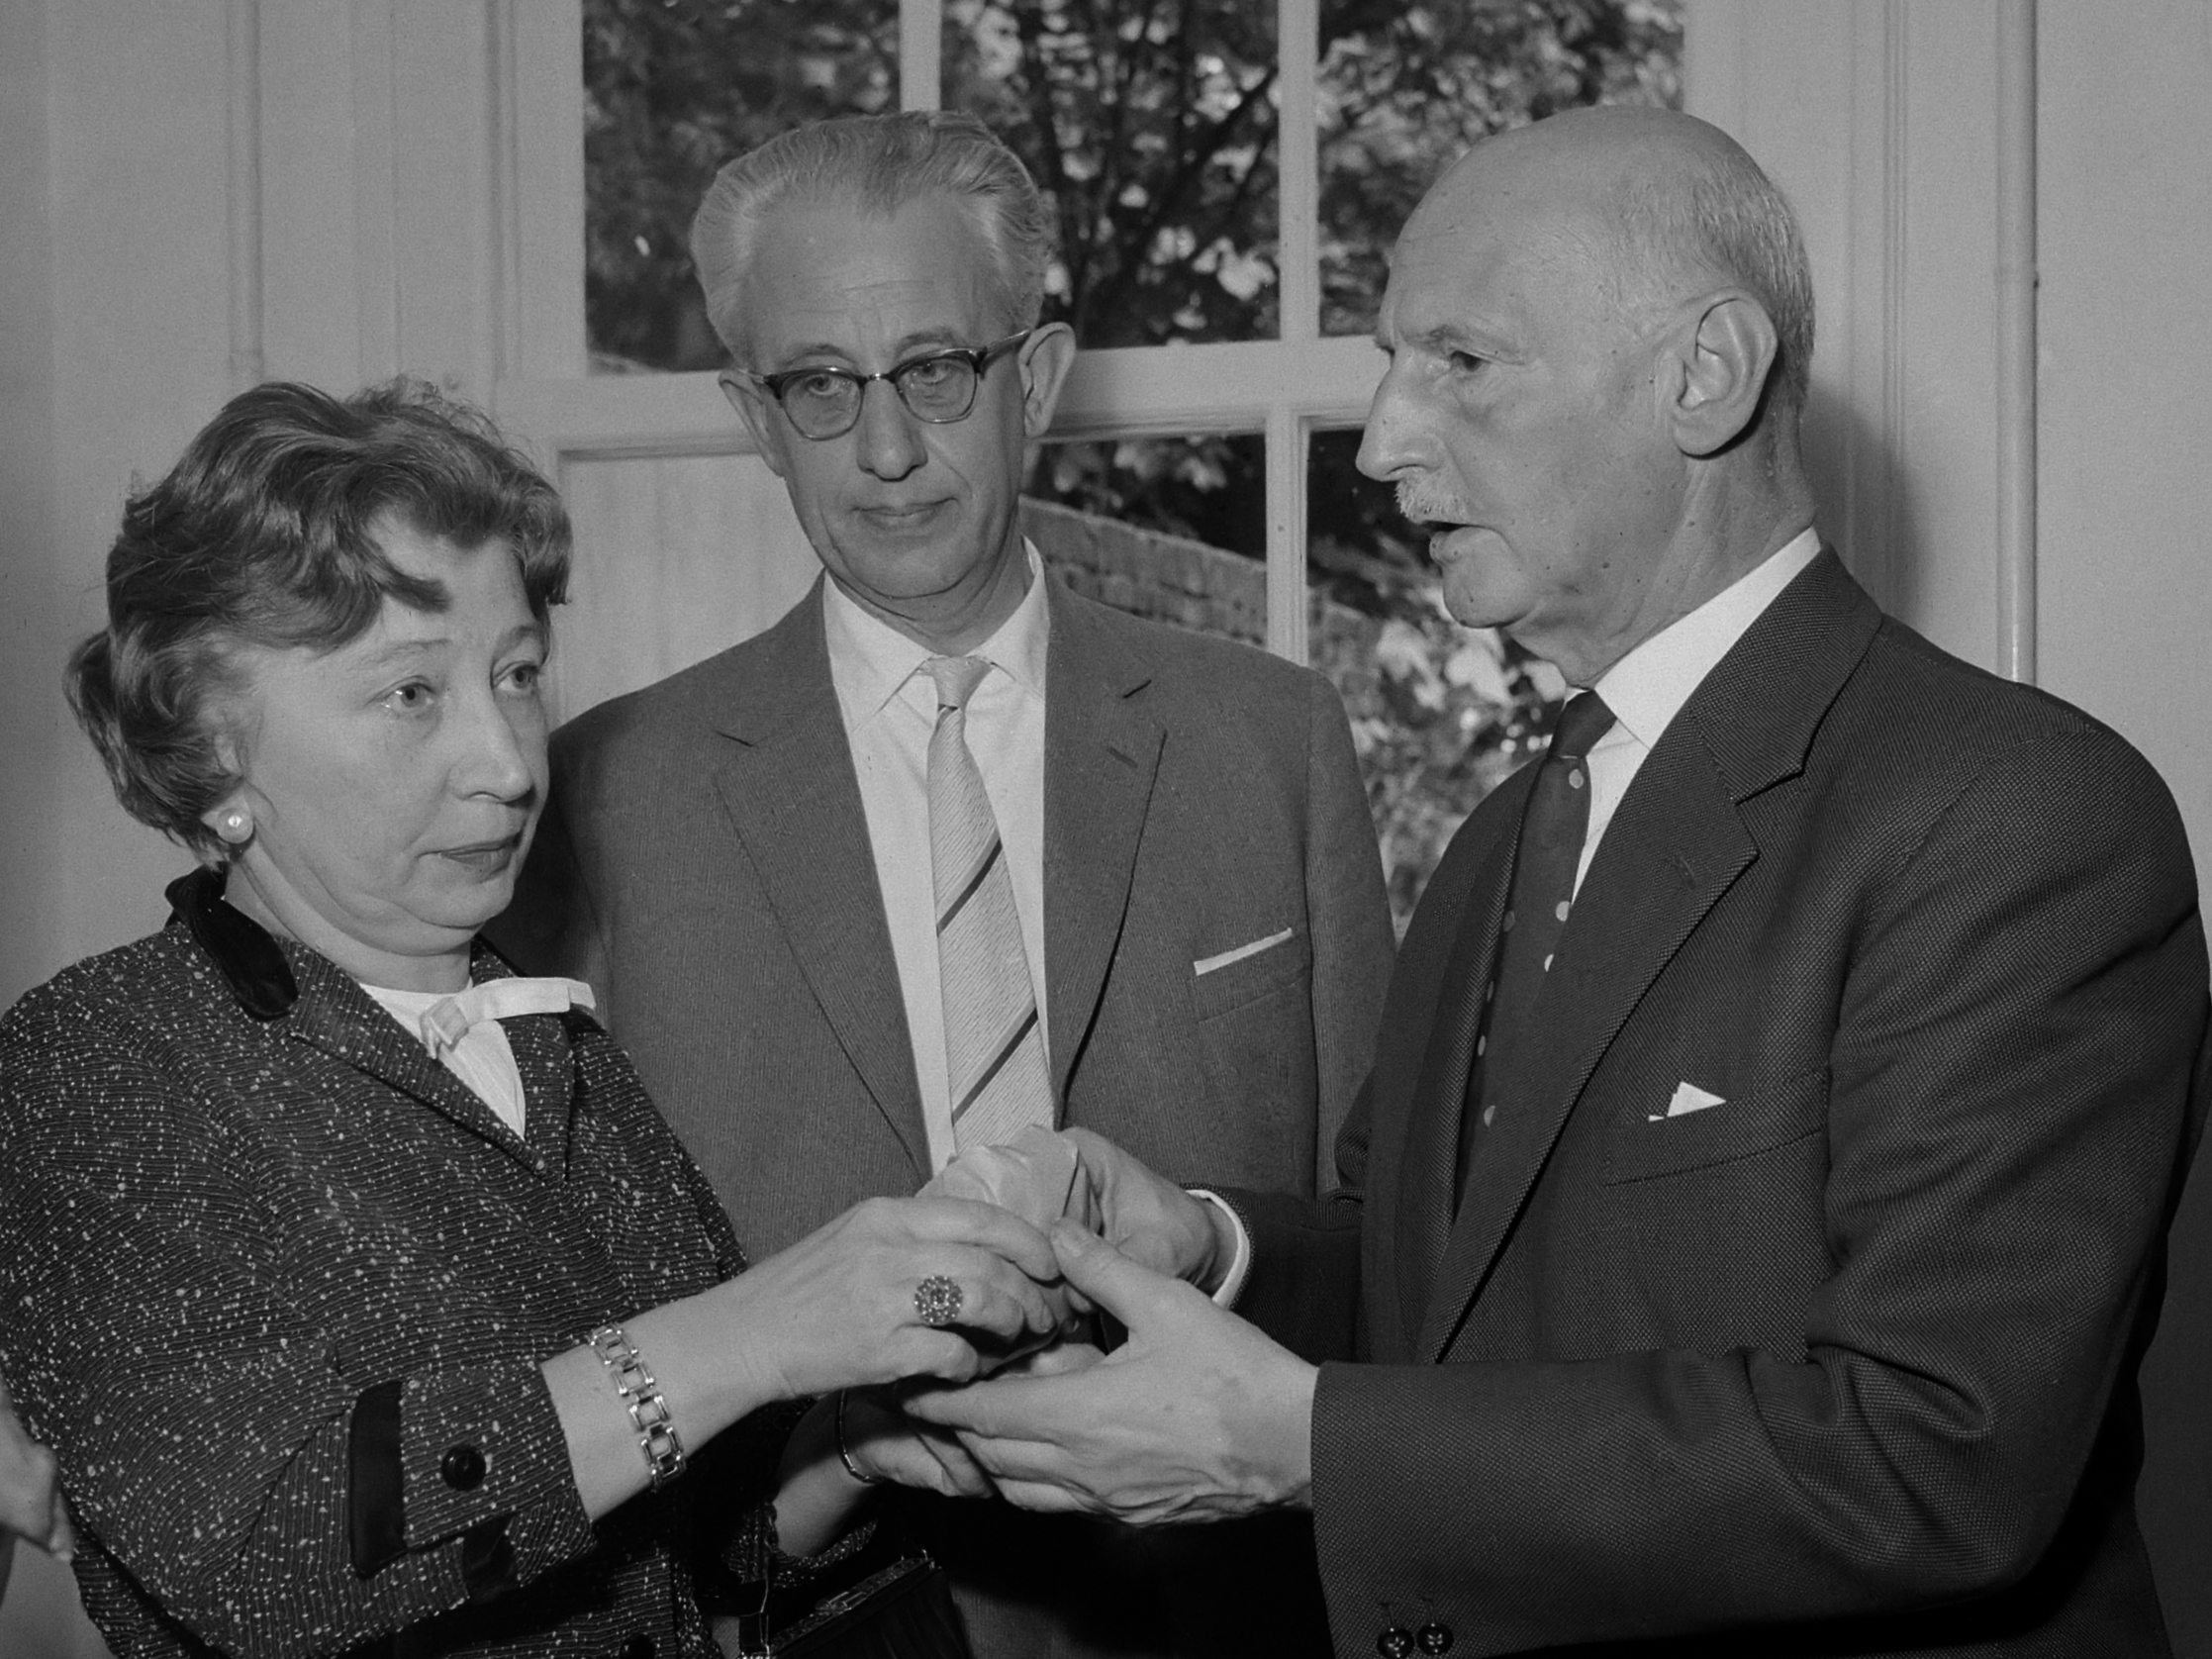 Od obitelji jedini je preživio otac Otto. Nakon rata, obiteljska prijateljica i pomagačica u skrivanju, Miep Gies, pokazala je Ottu očuvani dnevnik kojeg je Otto odlučio objaviti. Prvo izdanje tiskano je u Amsterdamu 1947. godine, i to u skromnih 3000 primjeraka. U 1952. godini prevedena je na engleski jezik i time je priča Anne postala svjetski poznata. 
Na fotografiji su Miep Gies sa suprugom, i Otto Frank (desno).